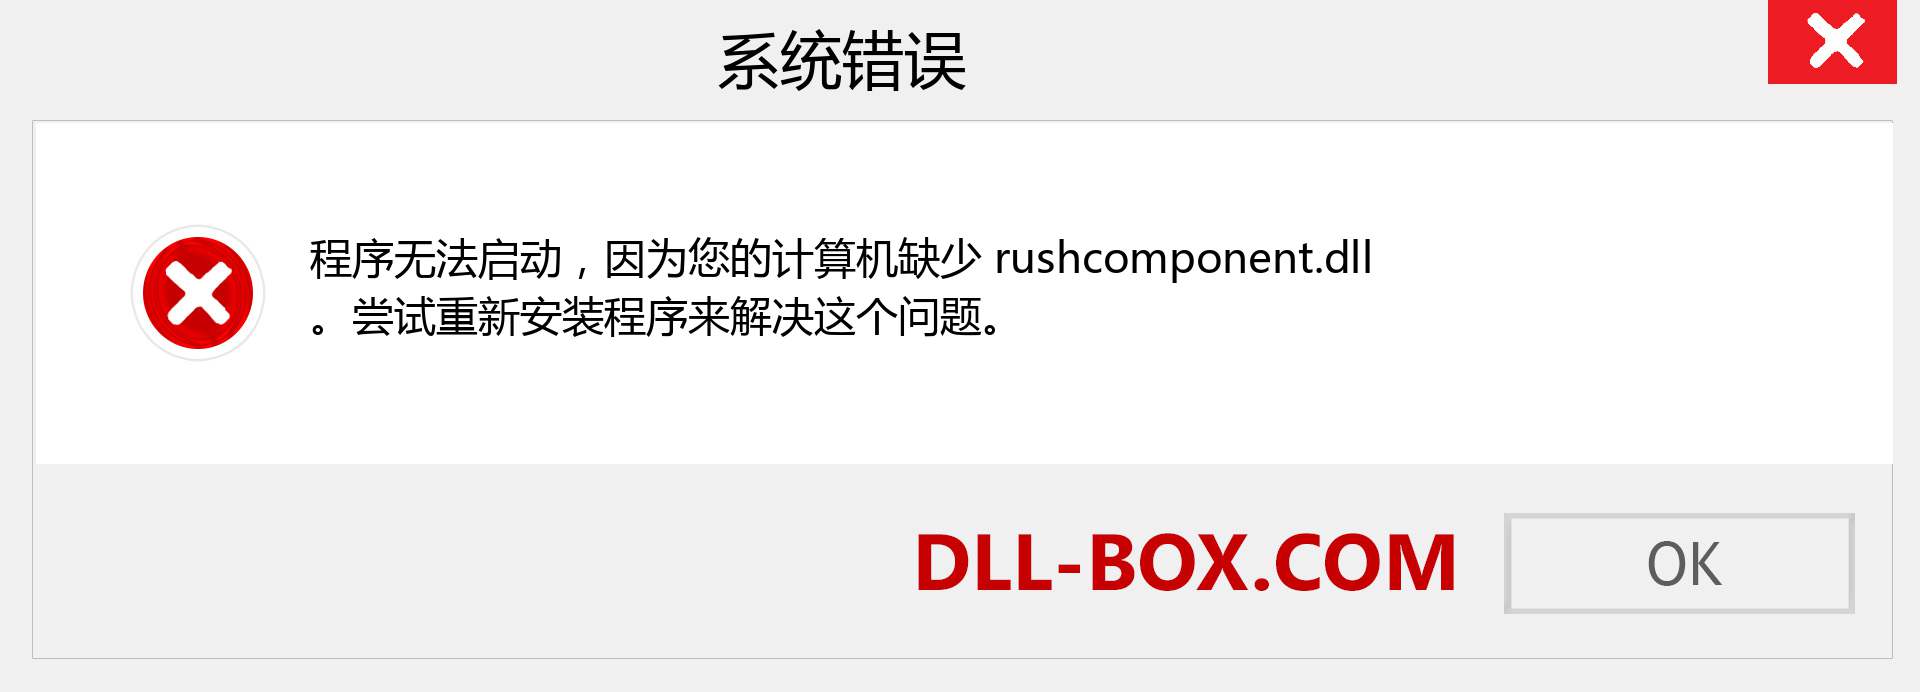 rushcomponent.dll 文件丢失？。 适用于 Windows 7、8、10 的下载 - 修复 Windows、照片、图像上的 rushcomponent dll 丢失错误